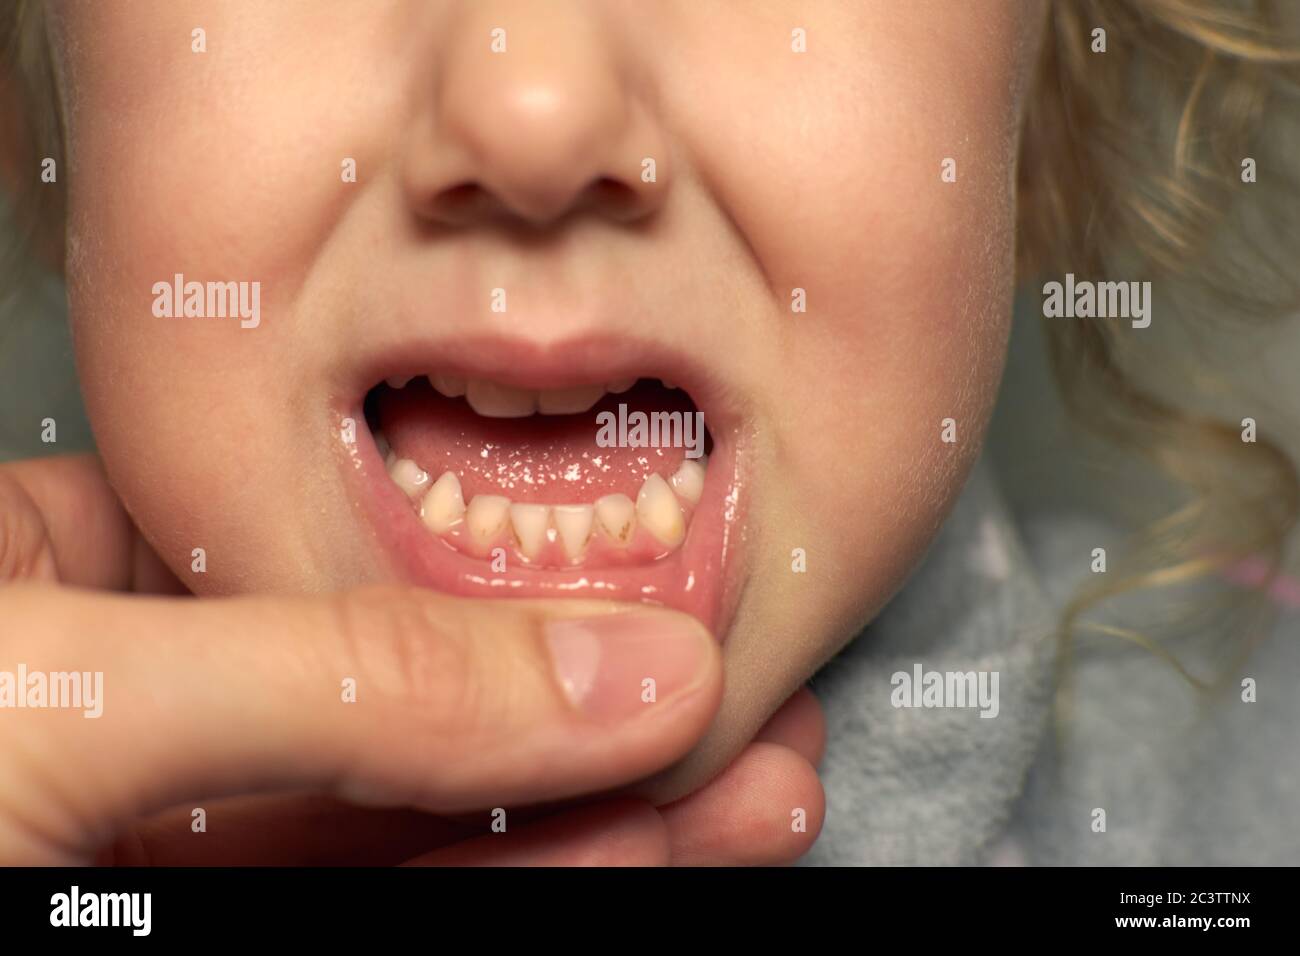 Gros plan des dents malsaines de bébé. Fille bouche ouverte montrant carie dents pourriture, mauvaises dents. Banque D'Images